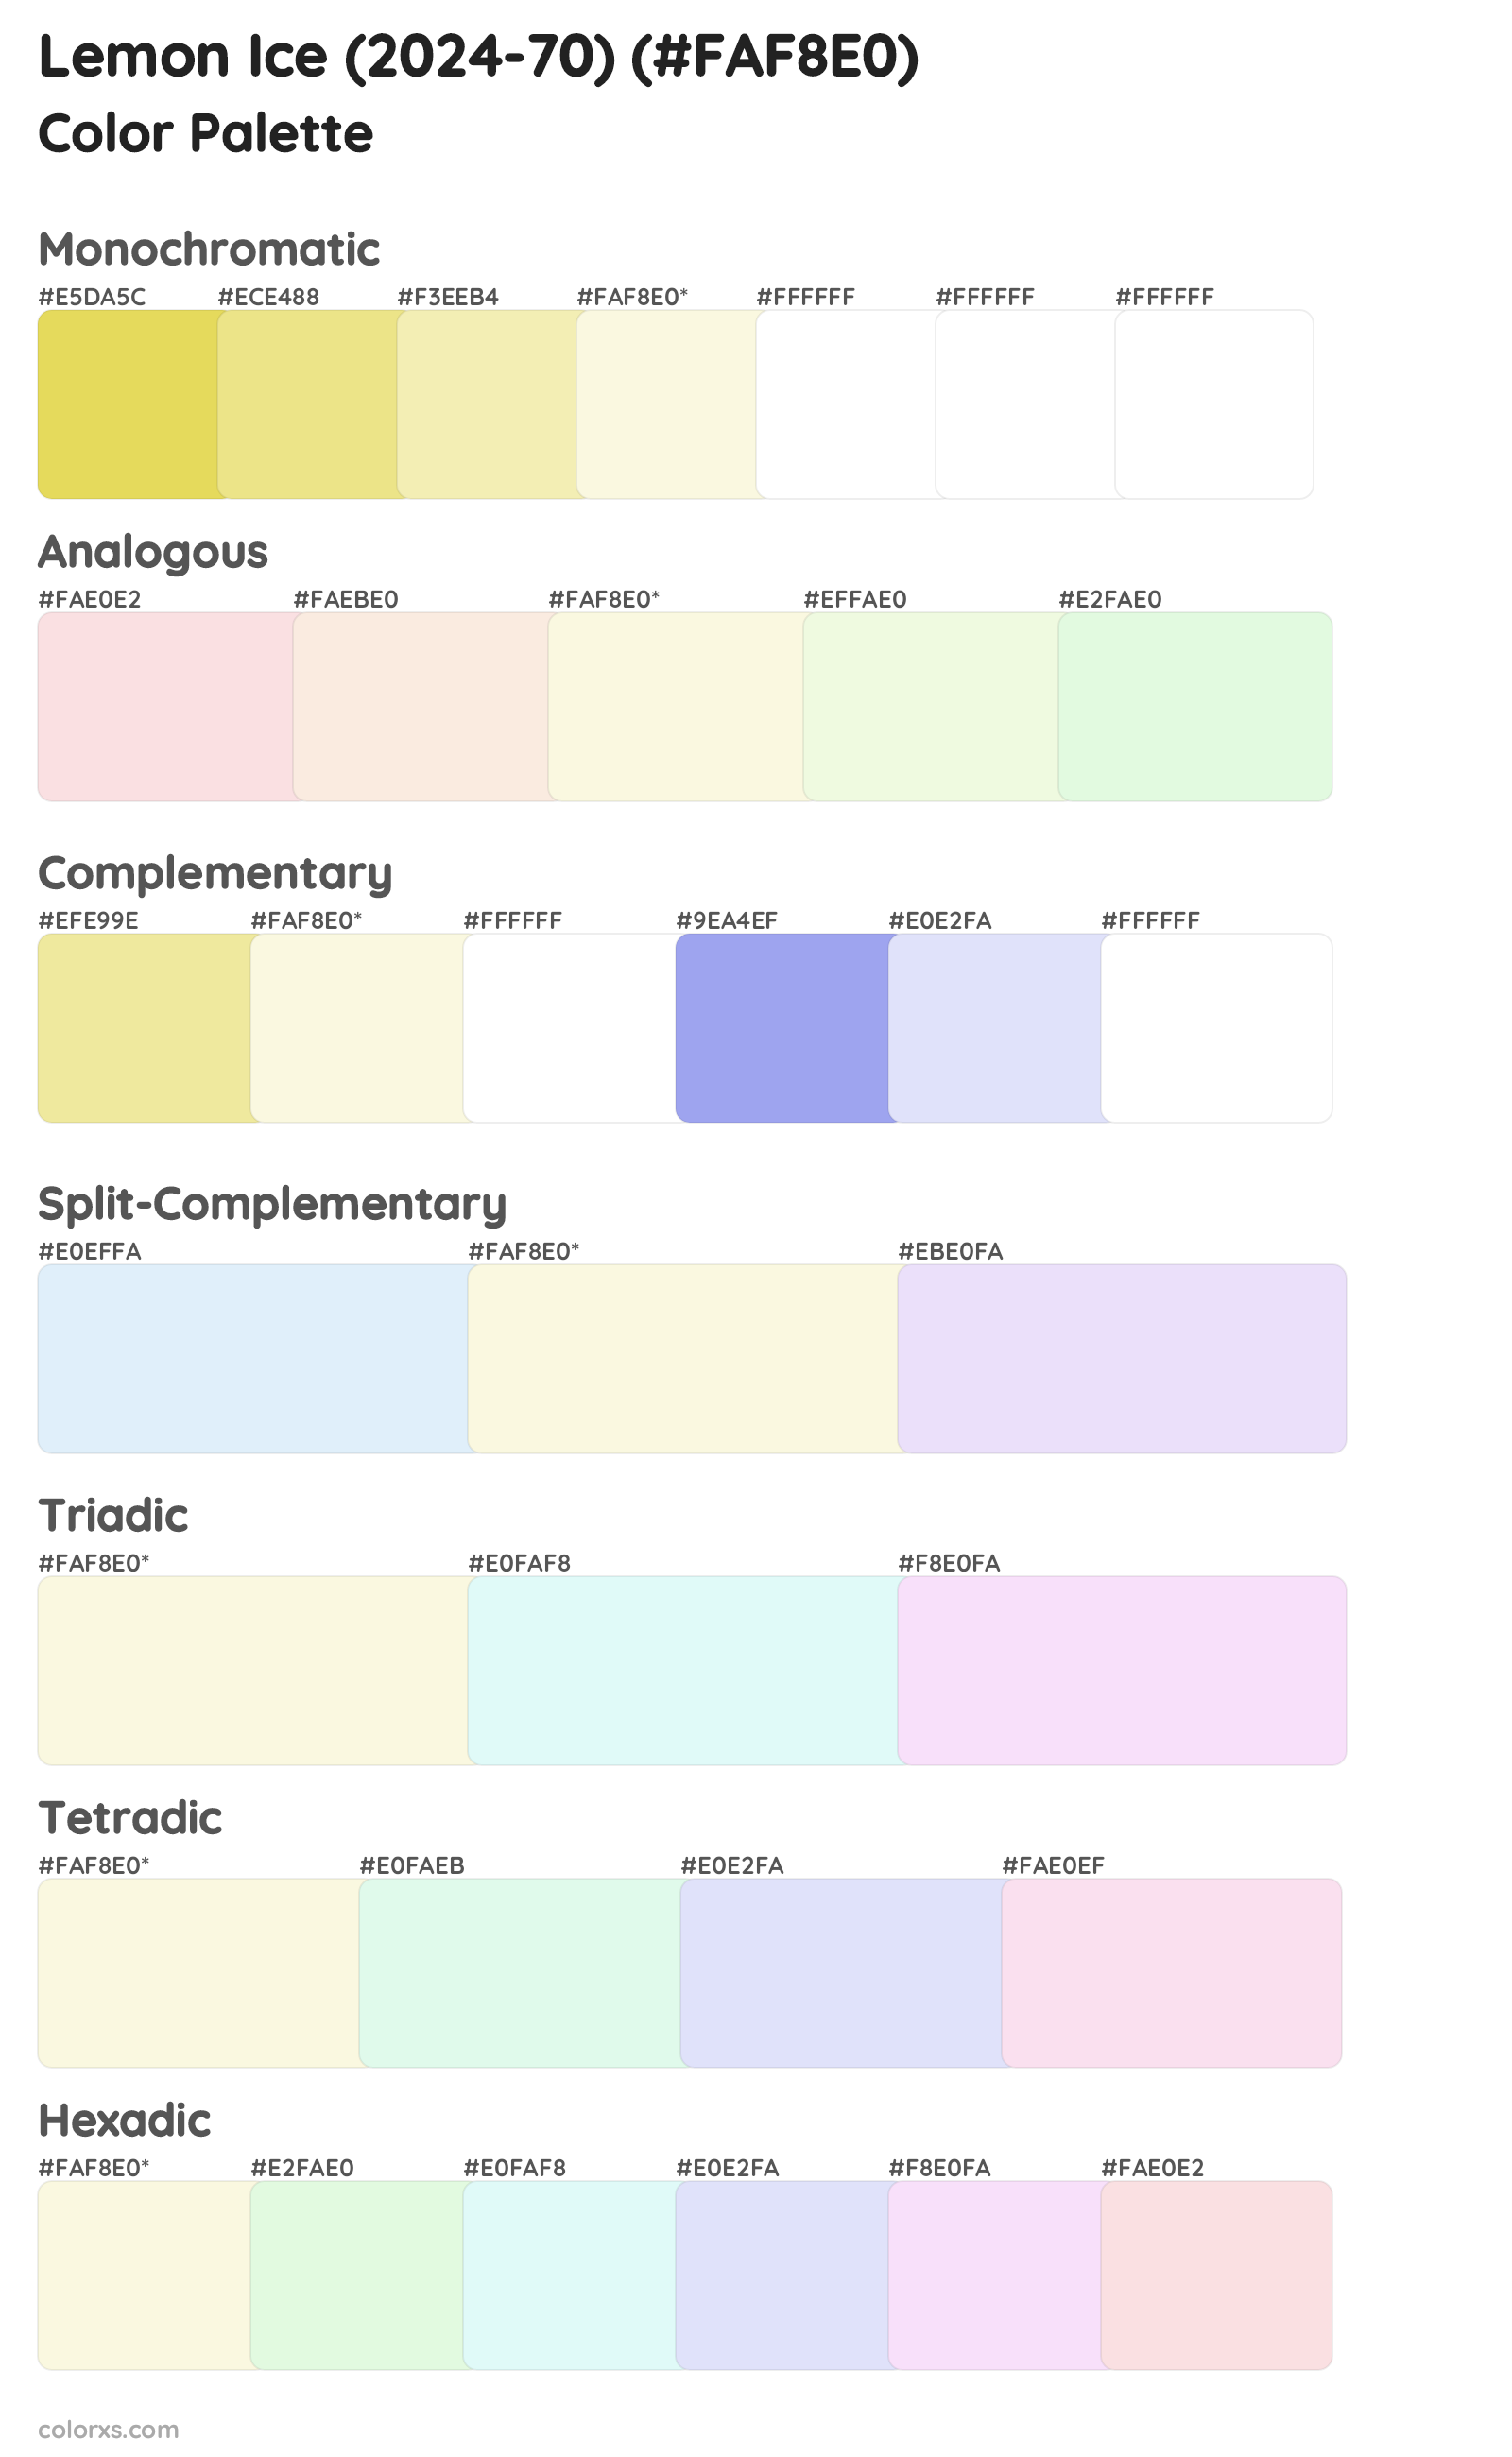 Lemon Ice (2024-70) Color Scheme Palettes